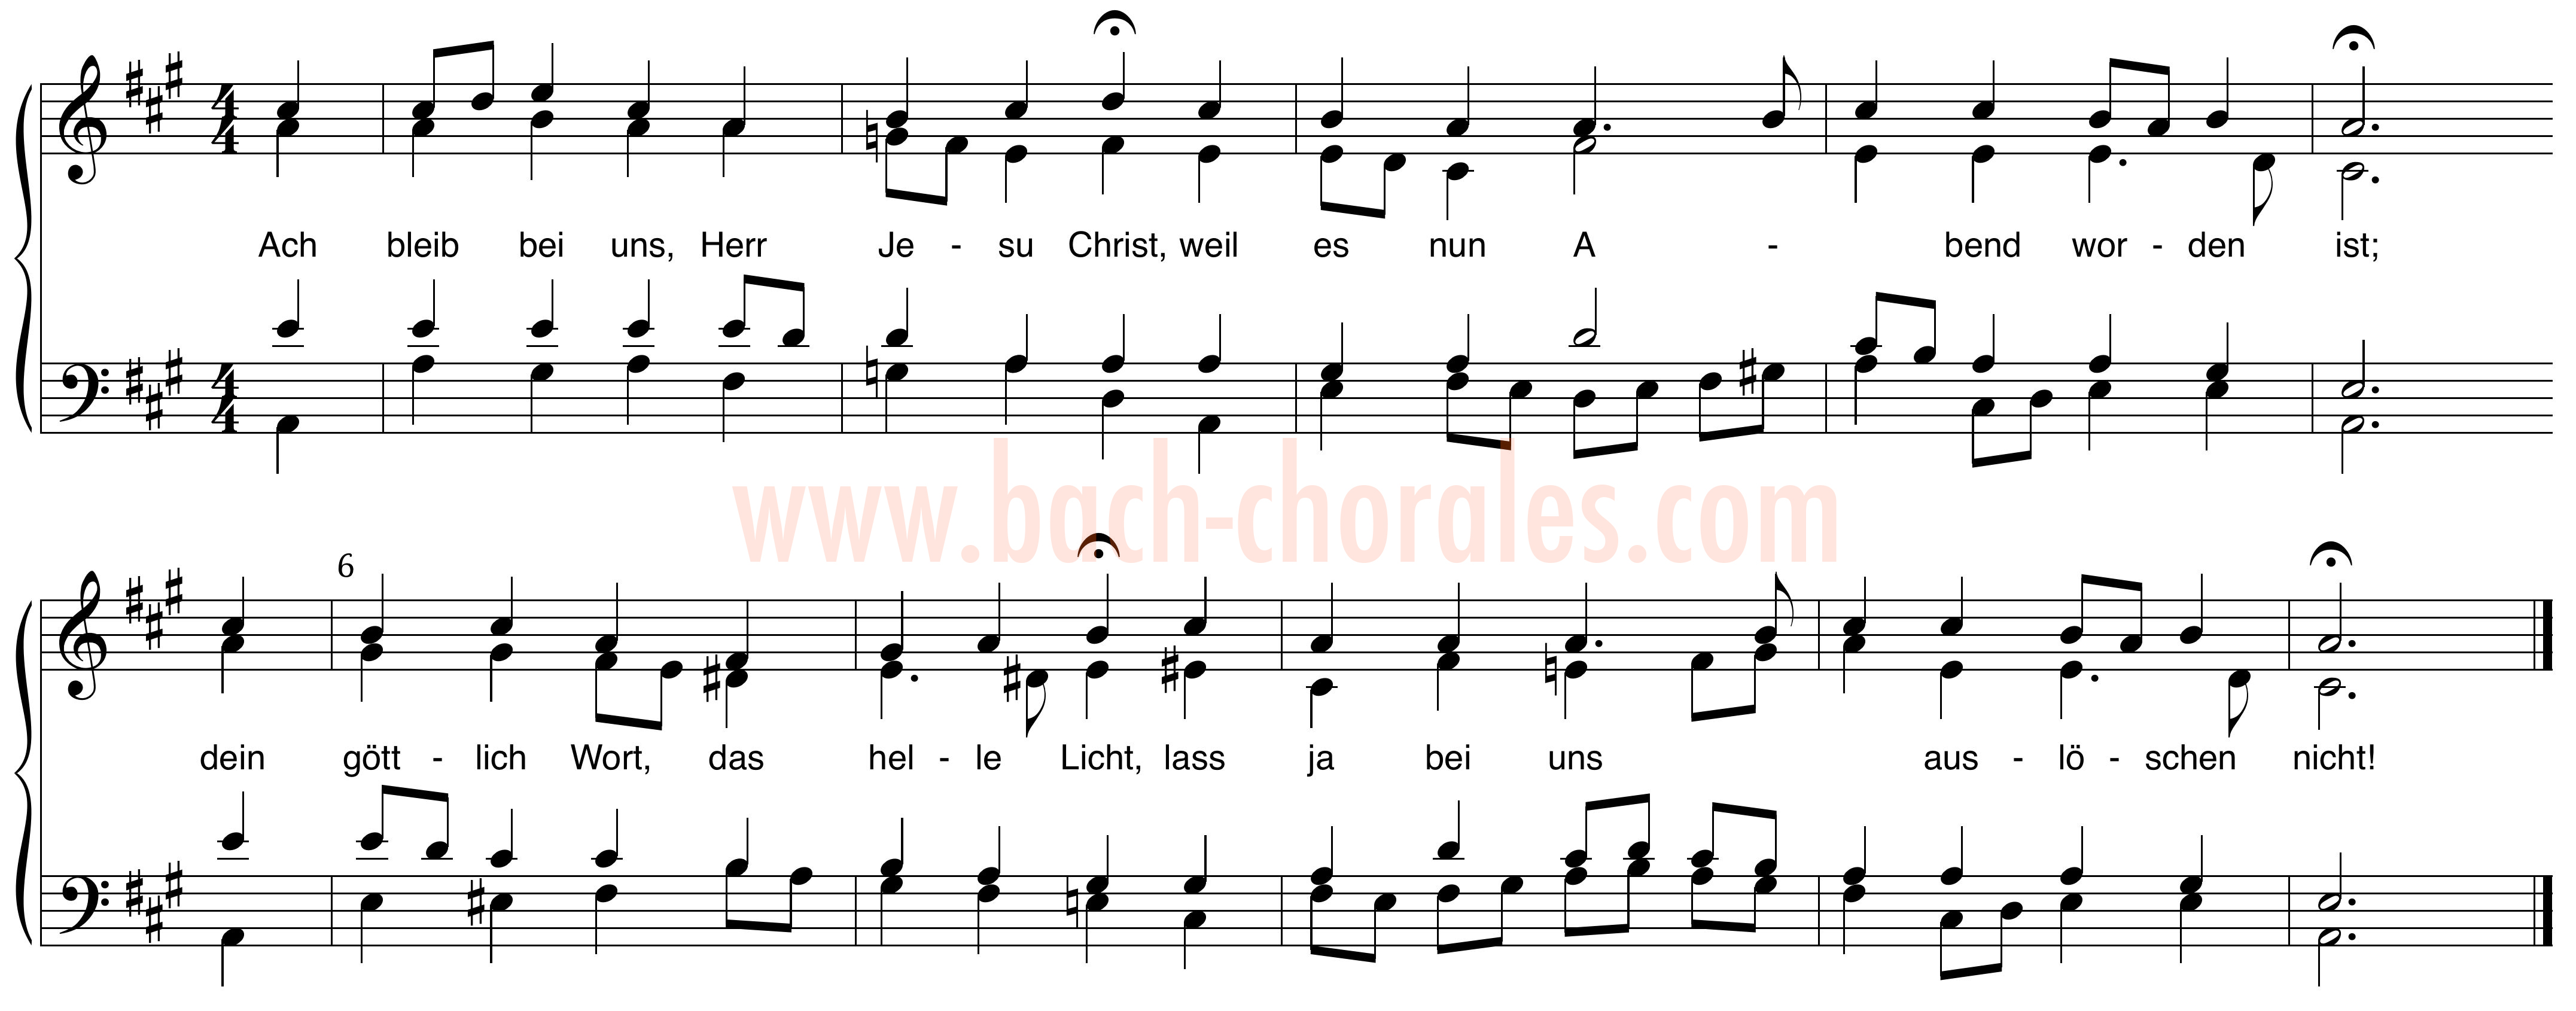 notenbeeld BWV 253 op https://www.bach-chorales.com/